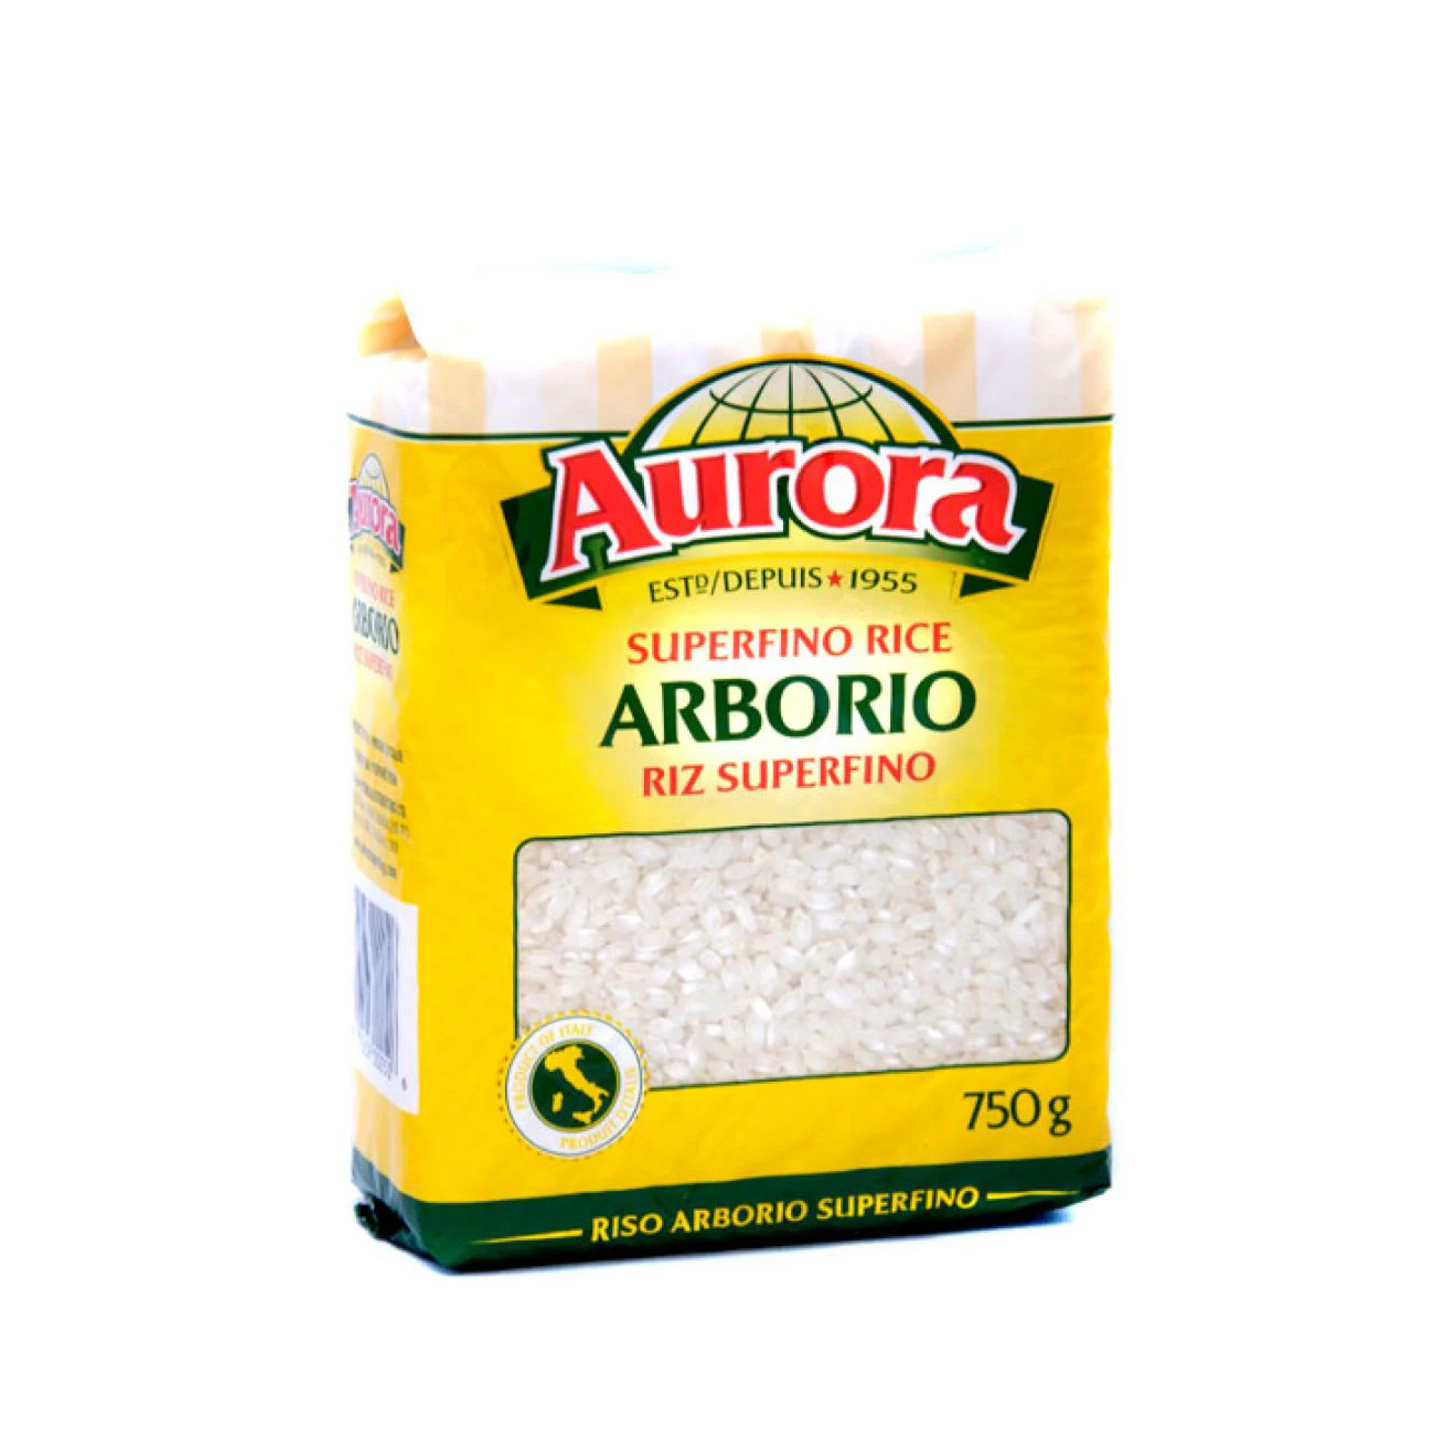 Aurora Superfine Arborio Rice 750g